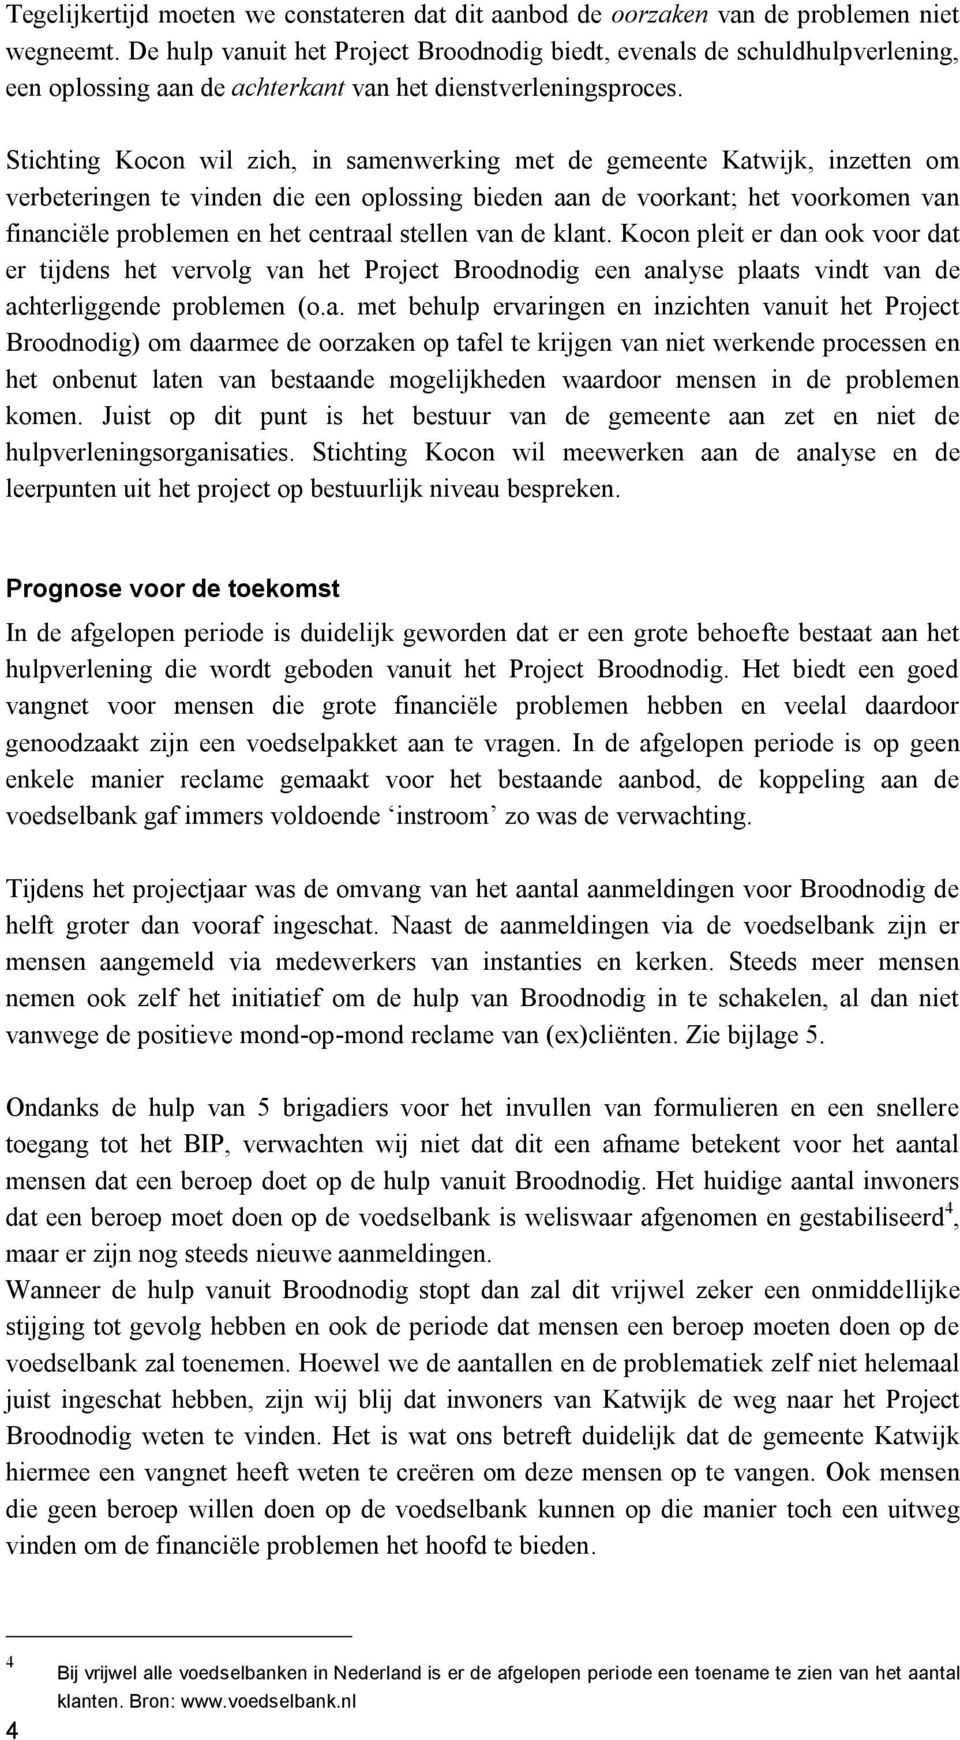 Stichting Kocon wil zich, in samenwerking met de gemeente Katwijk, inzetten om verbeteringen te vinden die een oplossing bieden aan de voorkant; het voorkomen van financiële problemen en het centraal